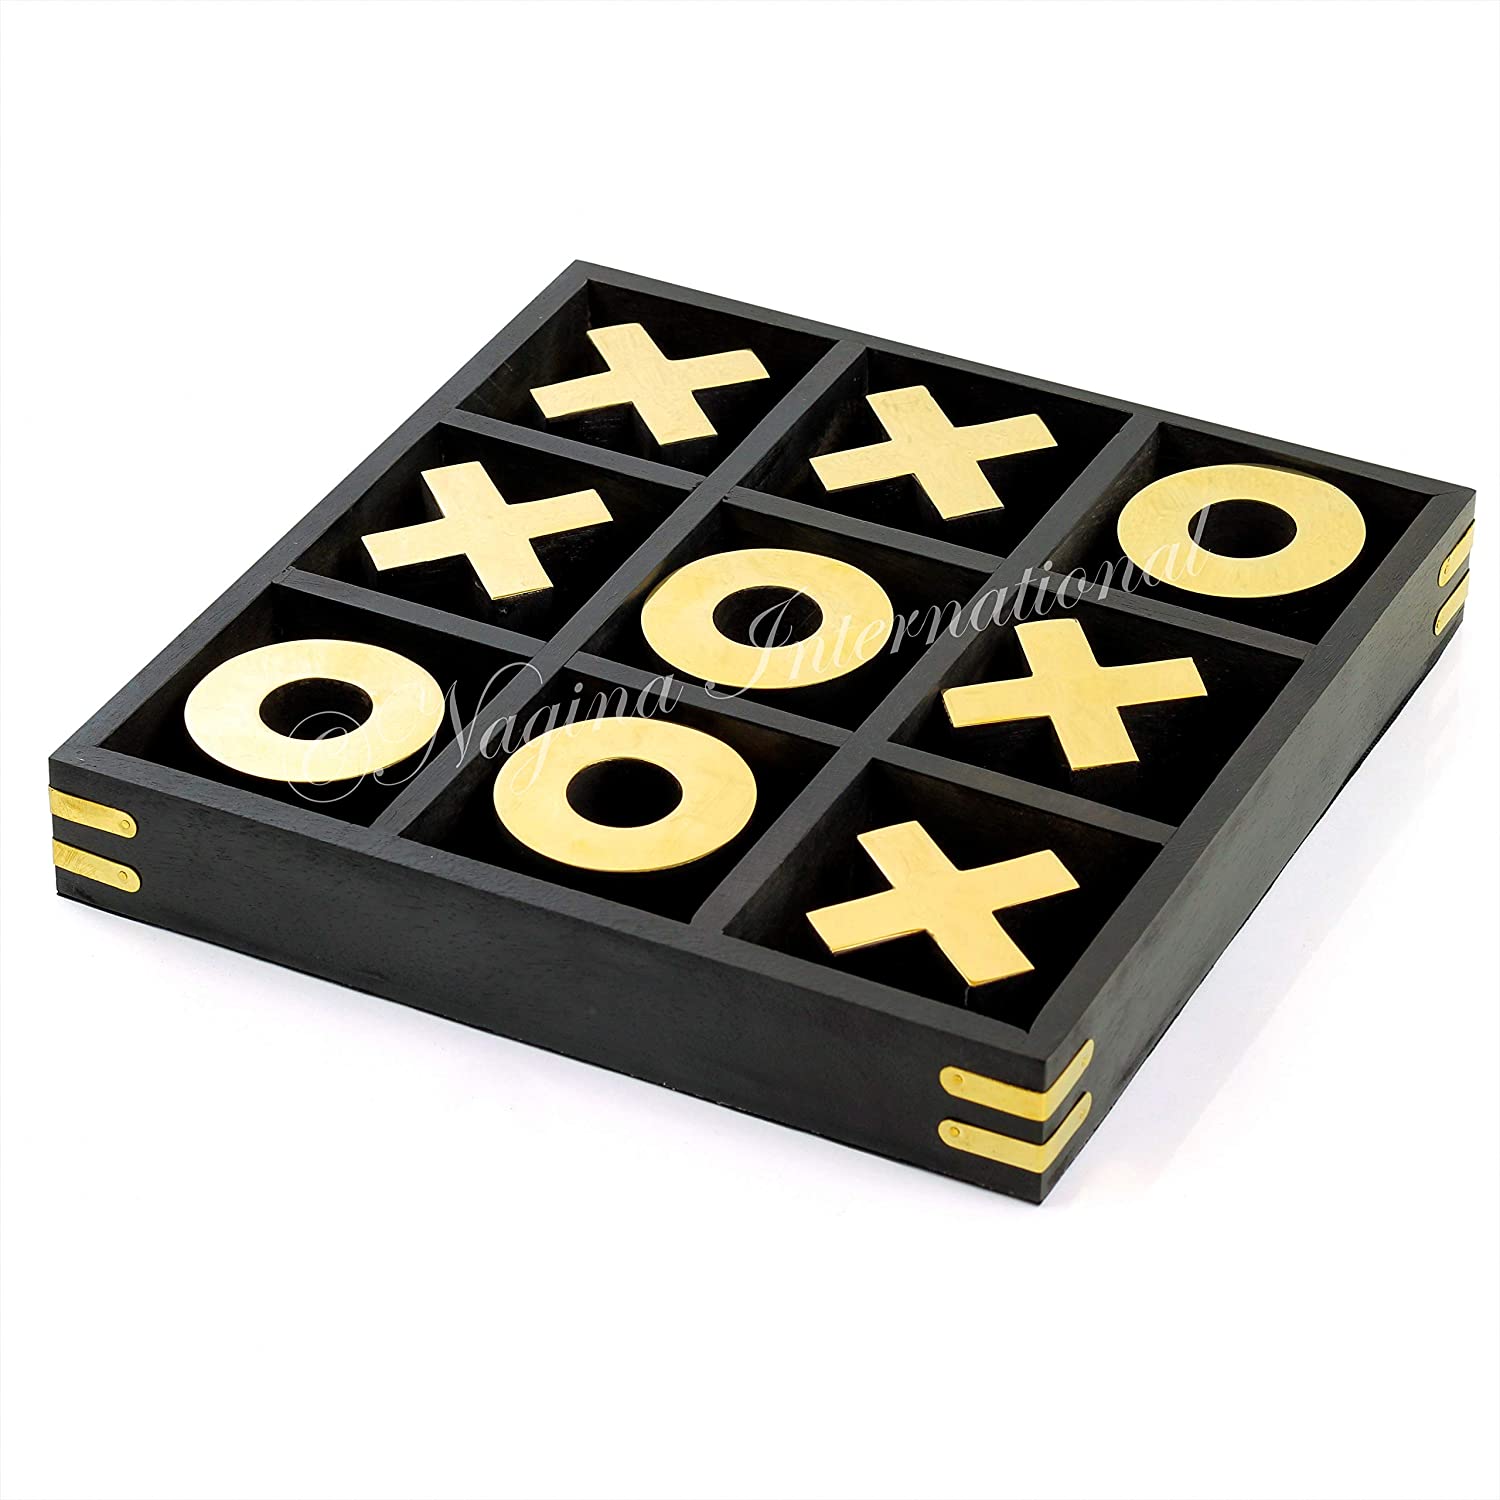  NUTTA - TIC TAC Toe Wooden Games Classic Board Game